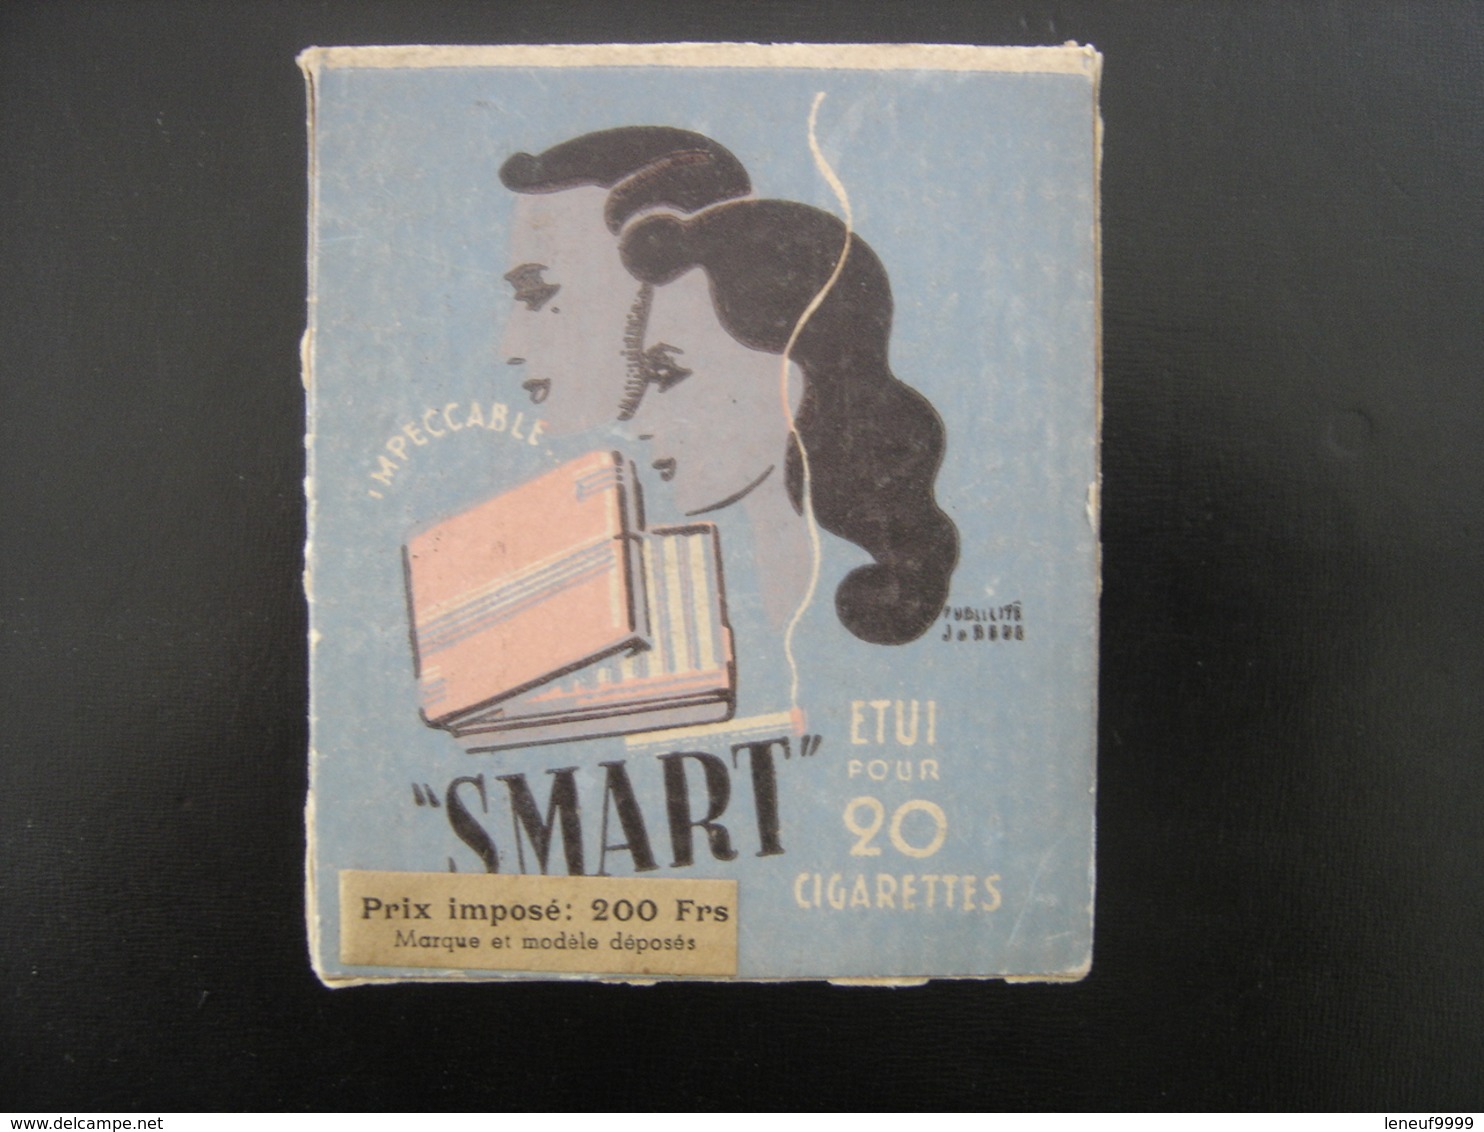 Etui Pour 20 Cigarettes SMART Made In France Plastique Pratique Prix 200 Francs VINTAGE - Empty Cigarettes Boxes